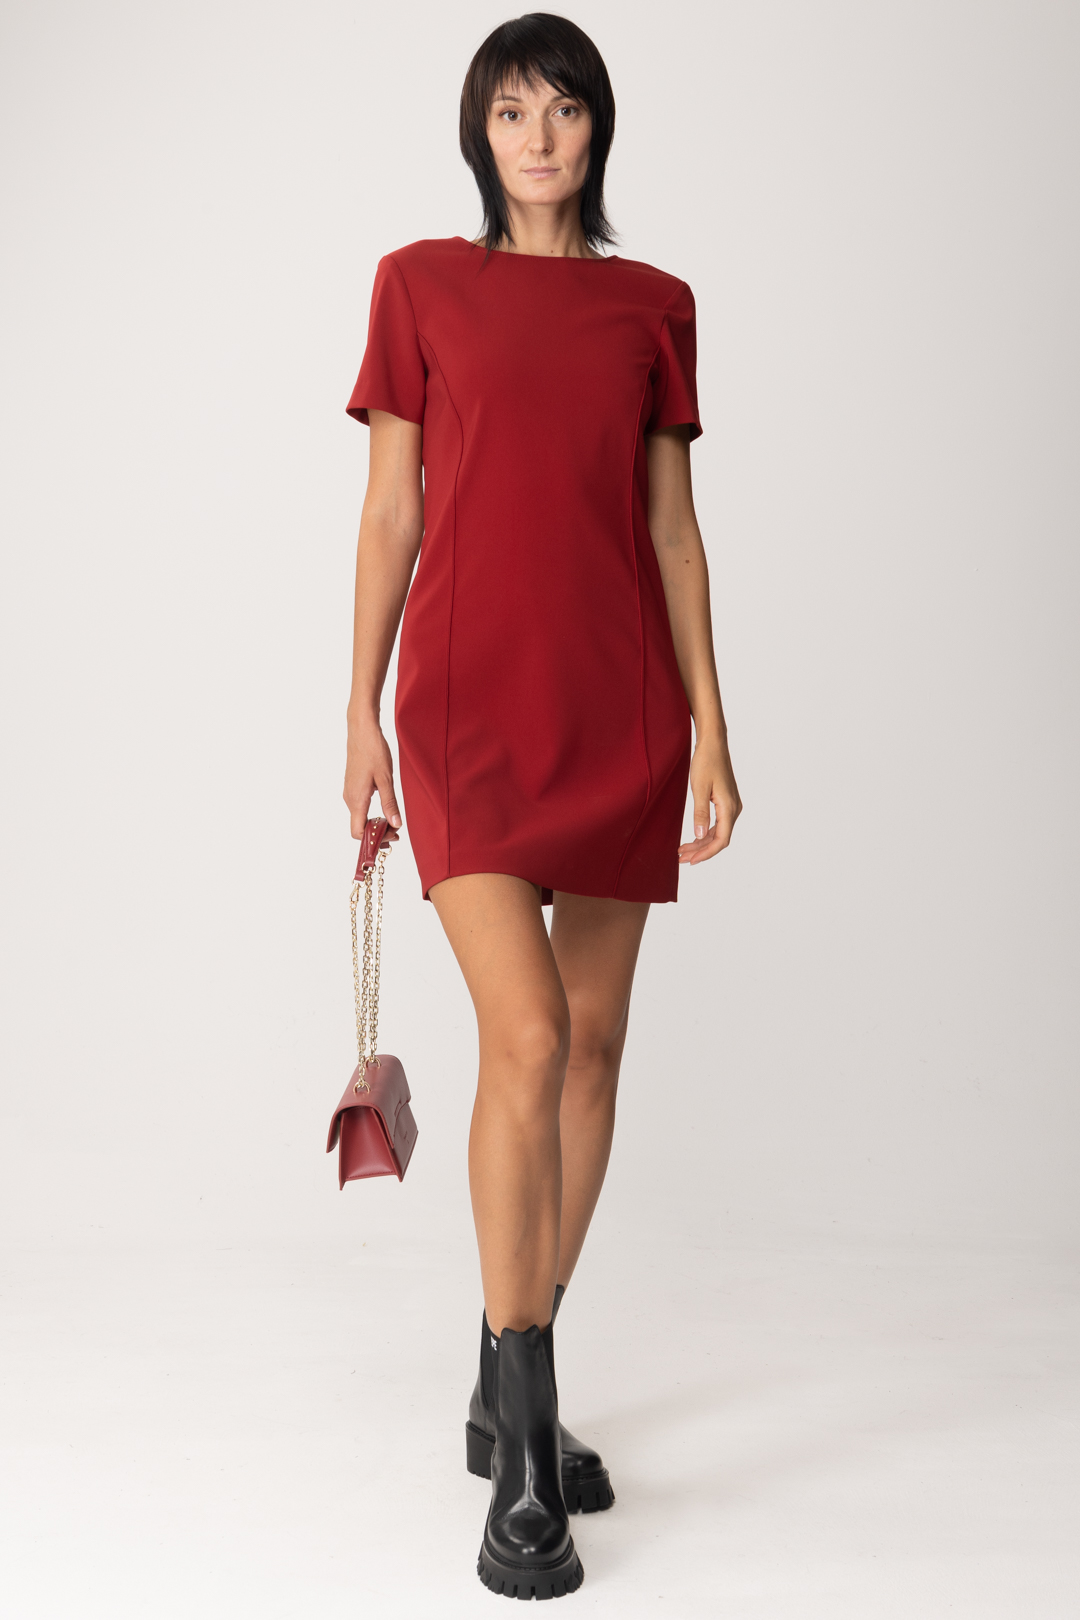 Aperçu: Patrizia Pepe Mini robe avec chaîne et breloque au dos Martian Red